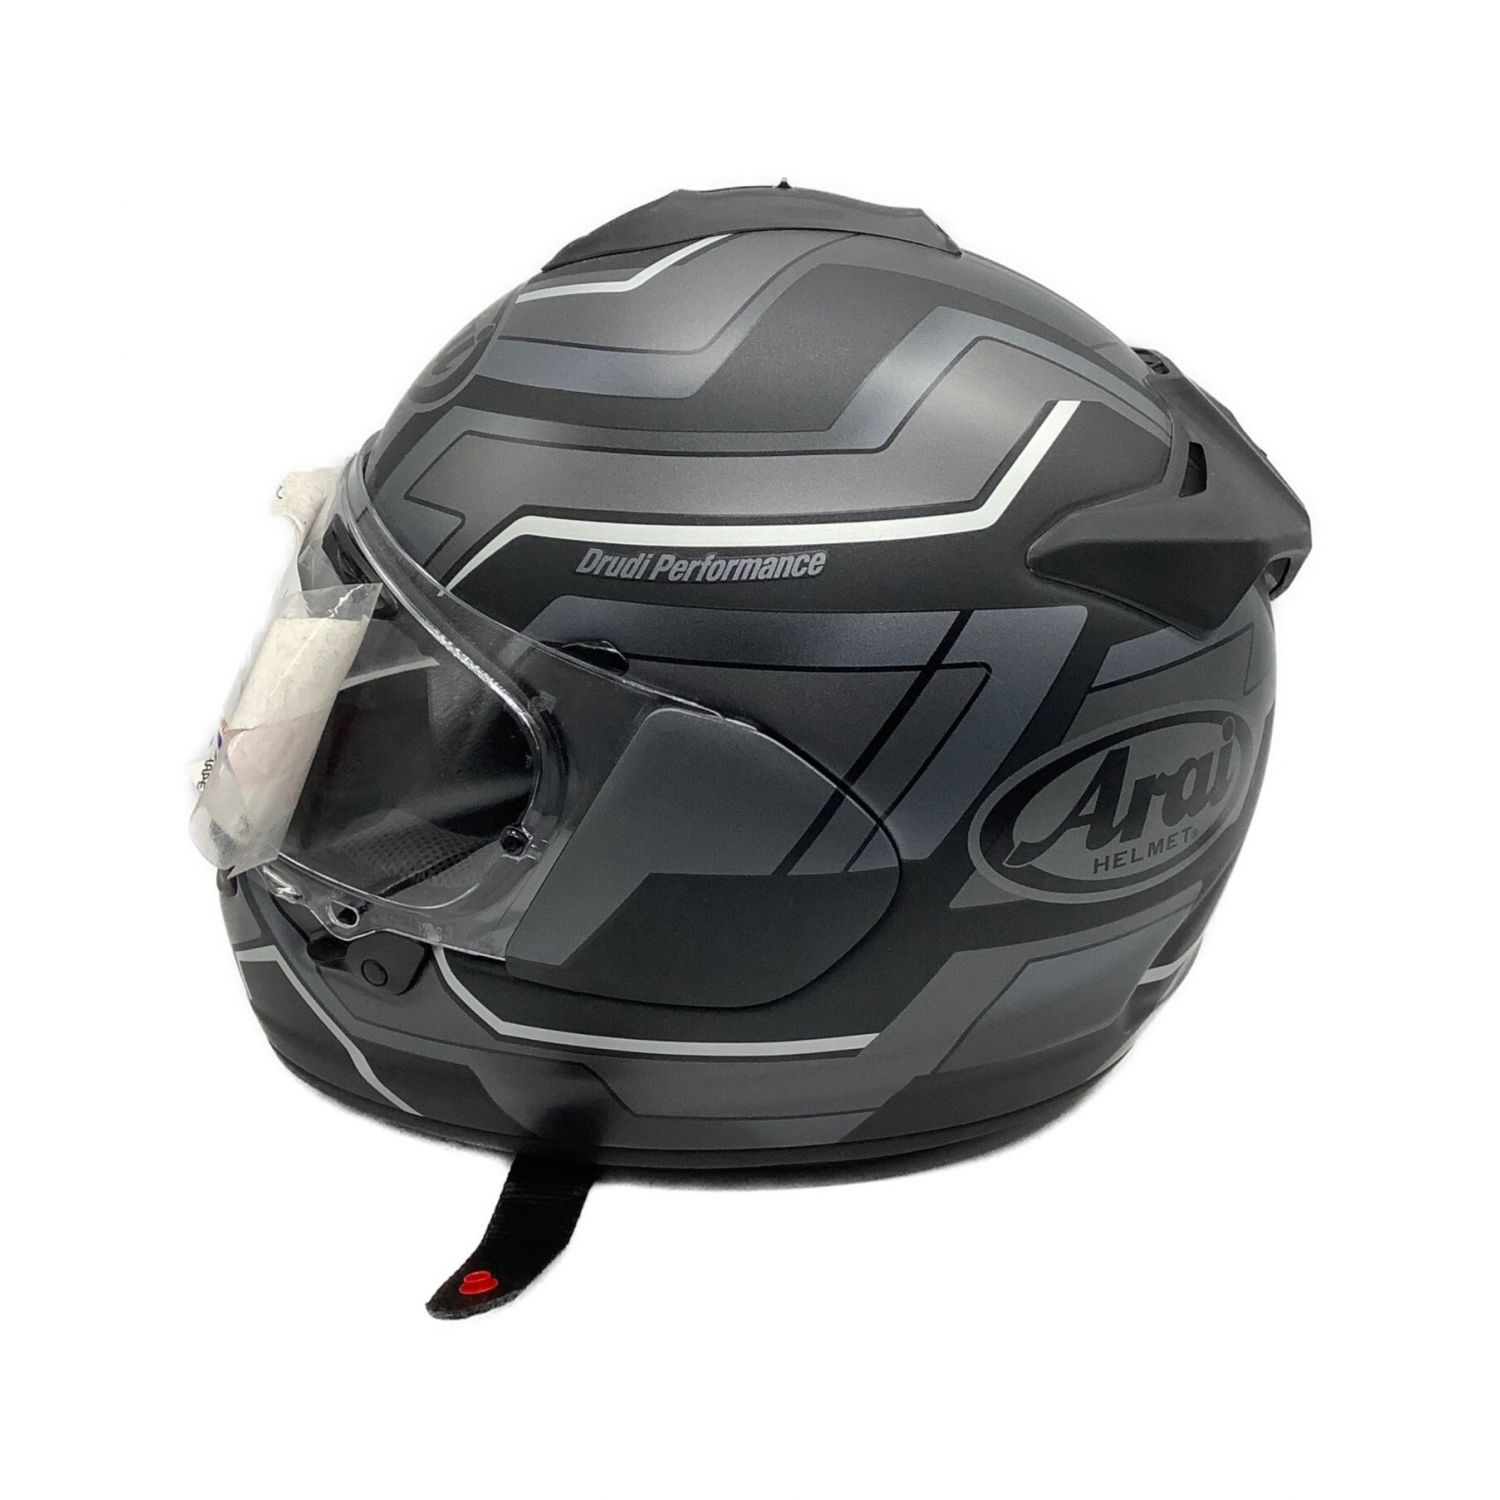 Arai (アライ) バイク用ヘルメット ベクターXブレイス PSCマーク 